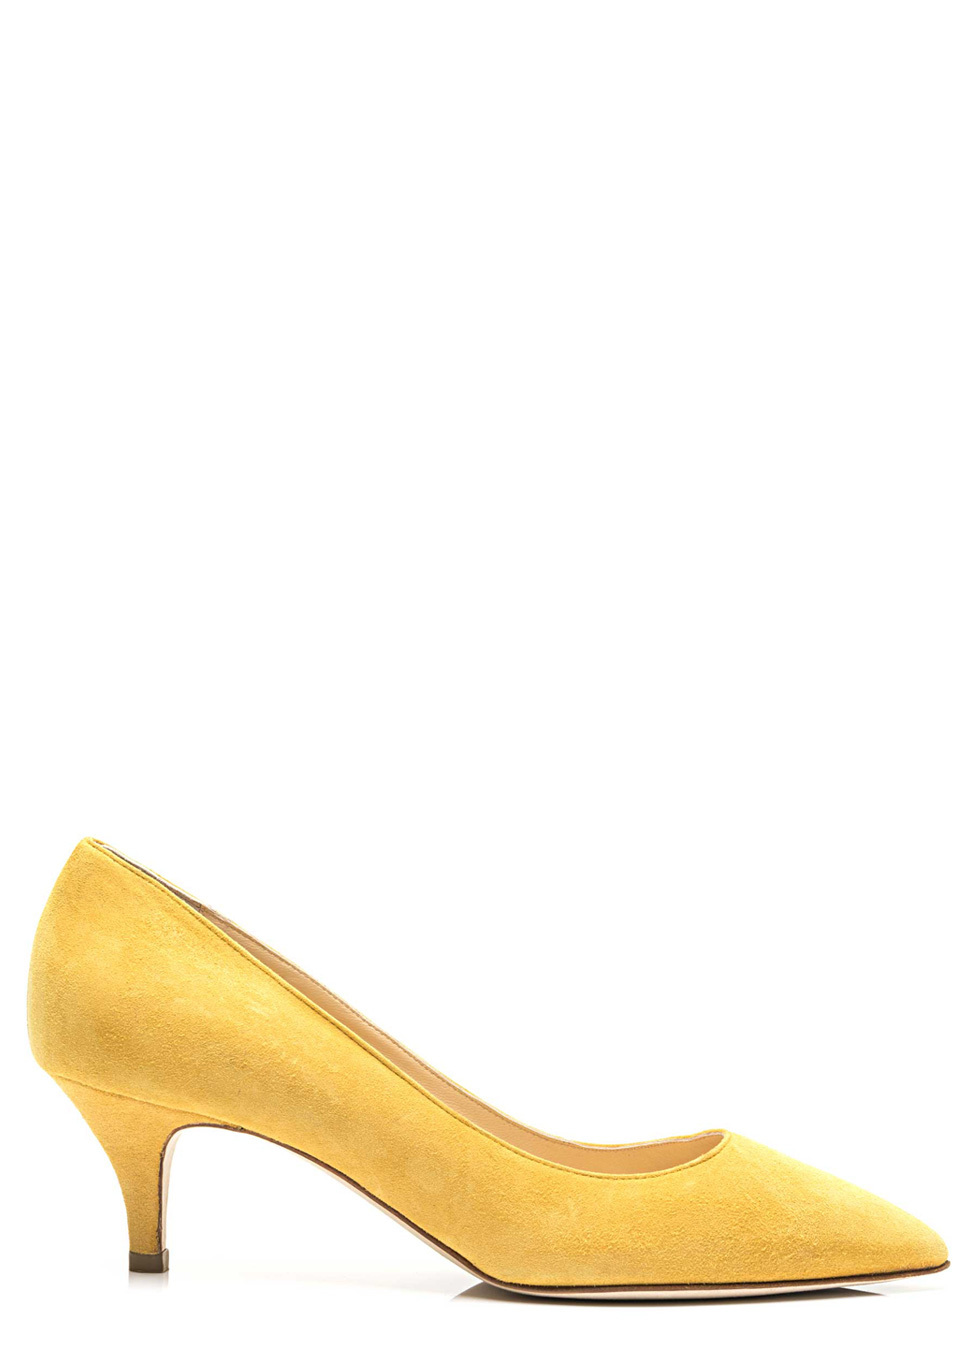 yellow kitten heel pumps